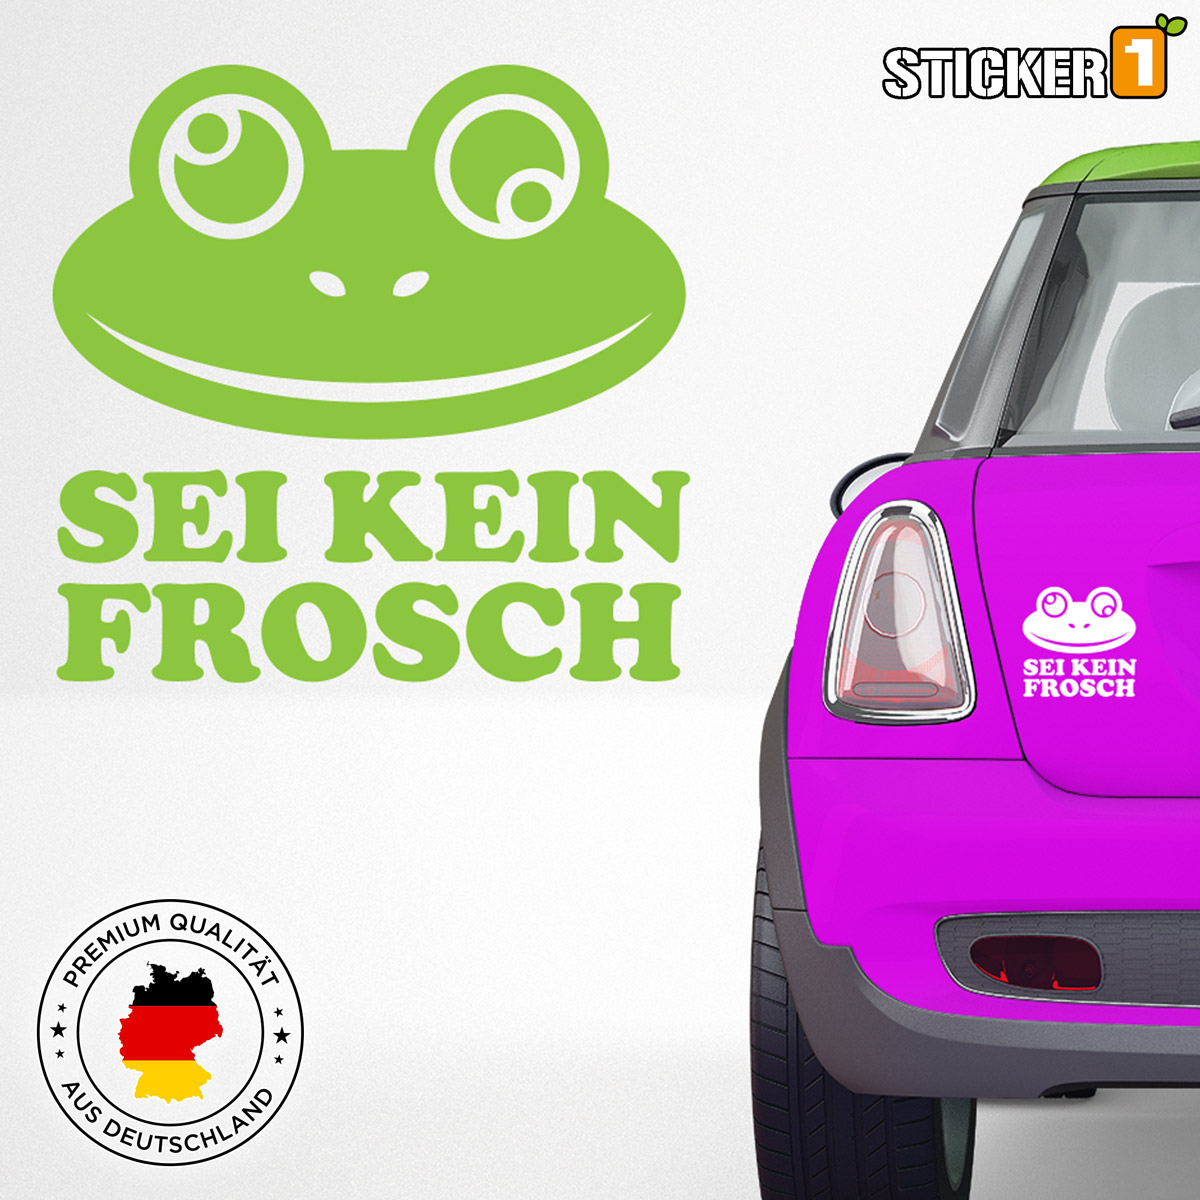 Frosch' Sticker